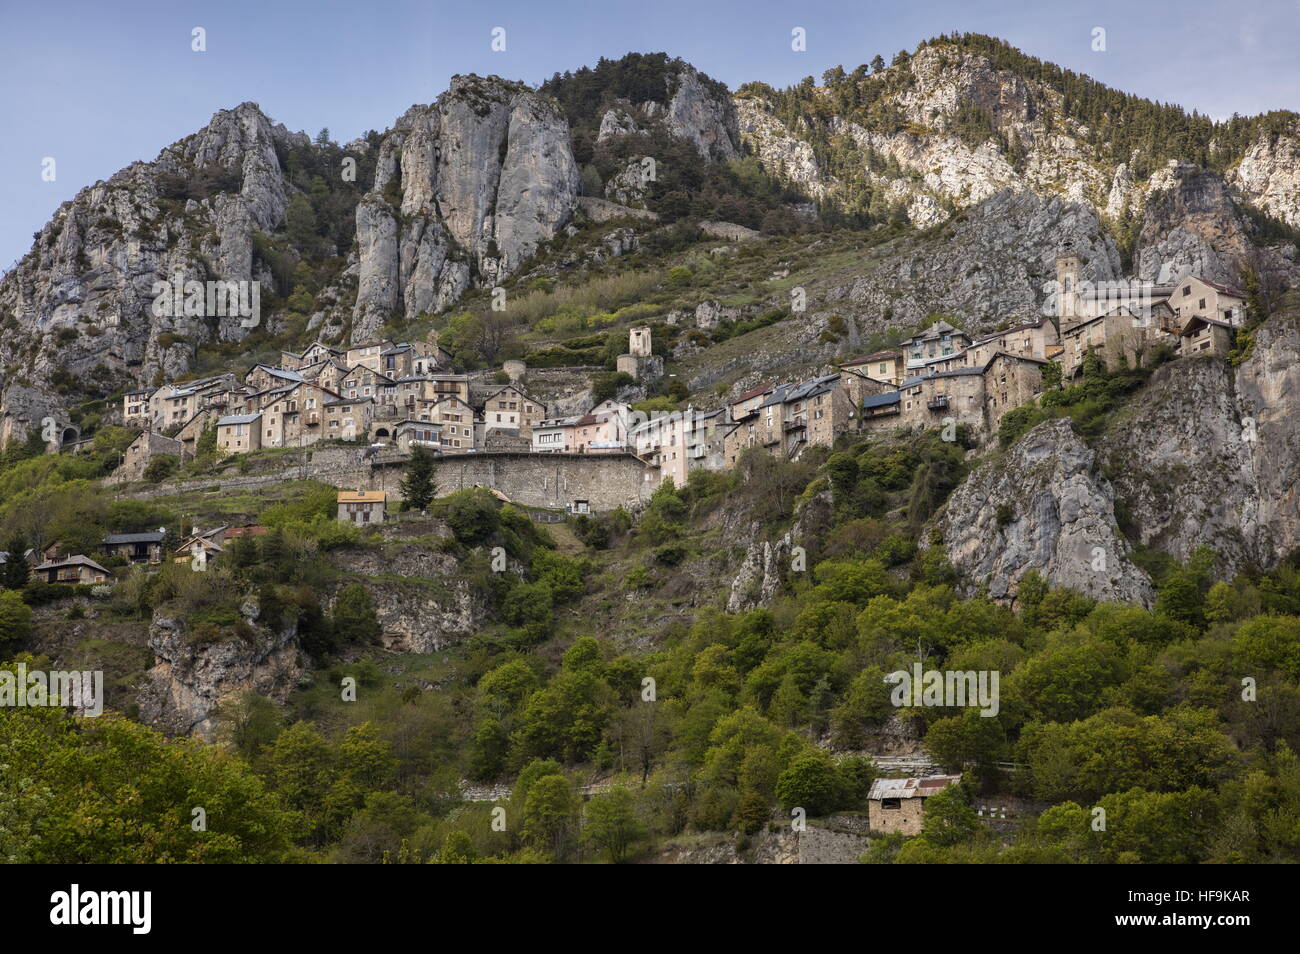 Le village de montagne de Roubion, au-dessus de la vallée de la Tinee, Alpes Maritimes, France. Banque D'Images